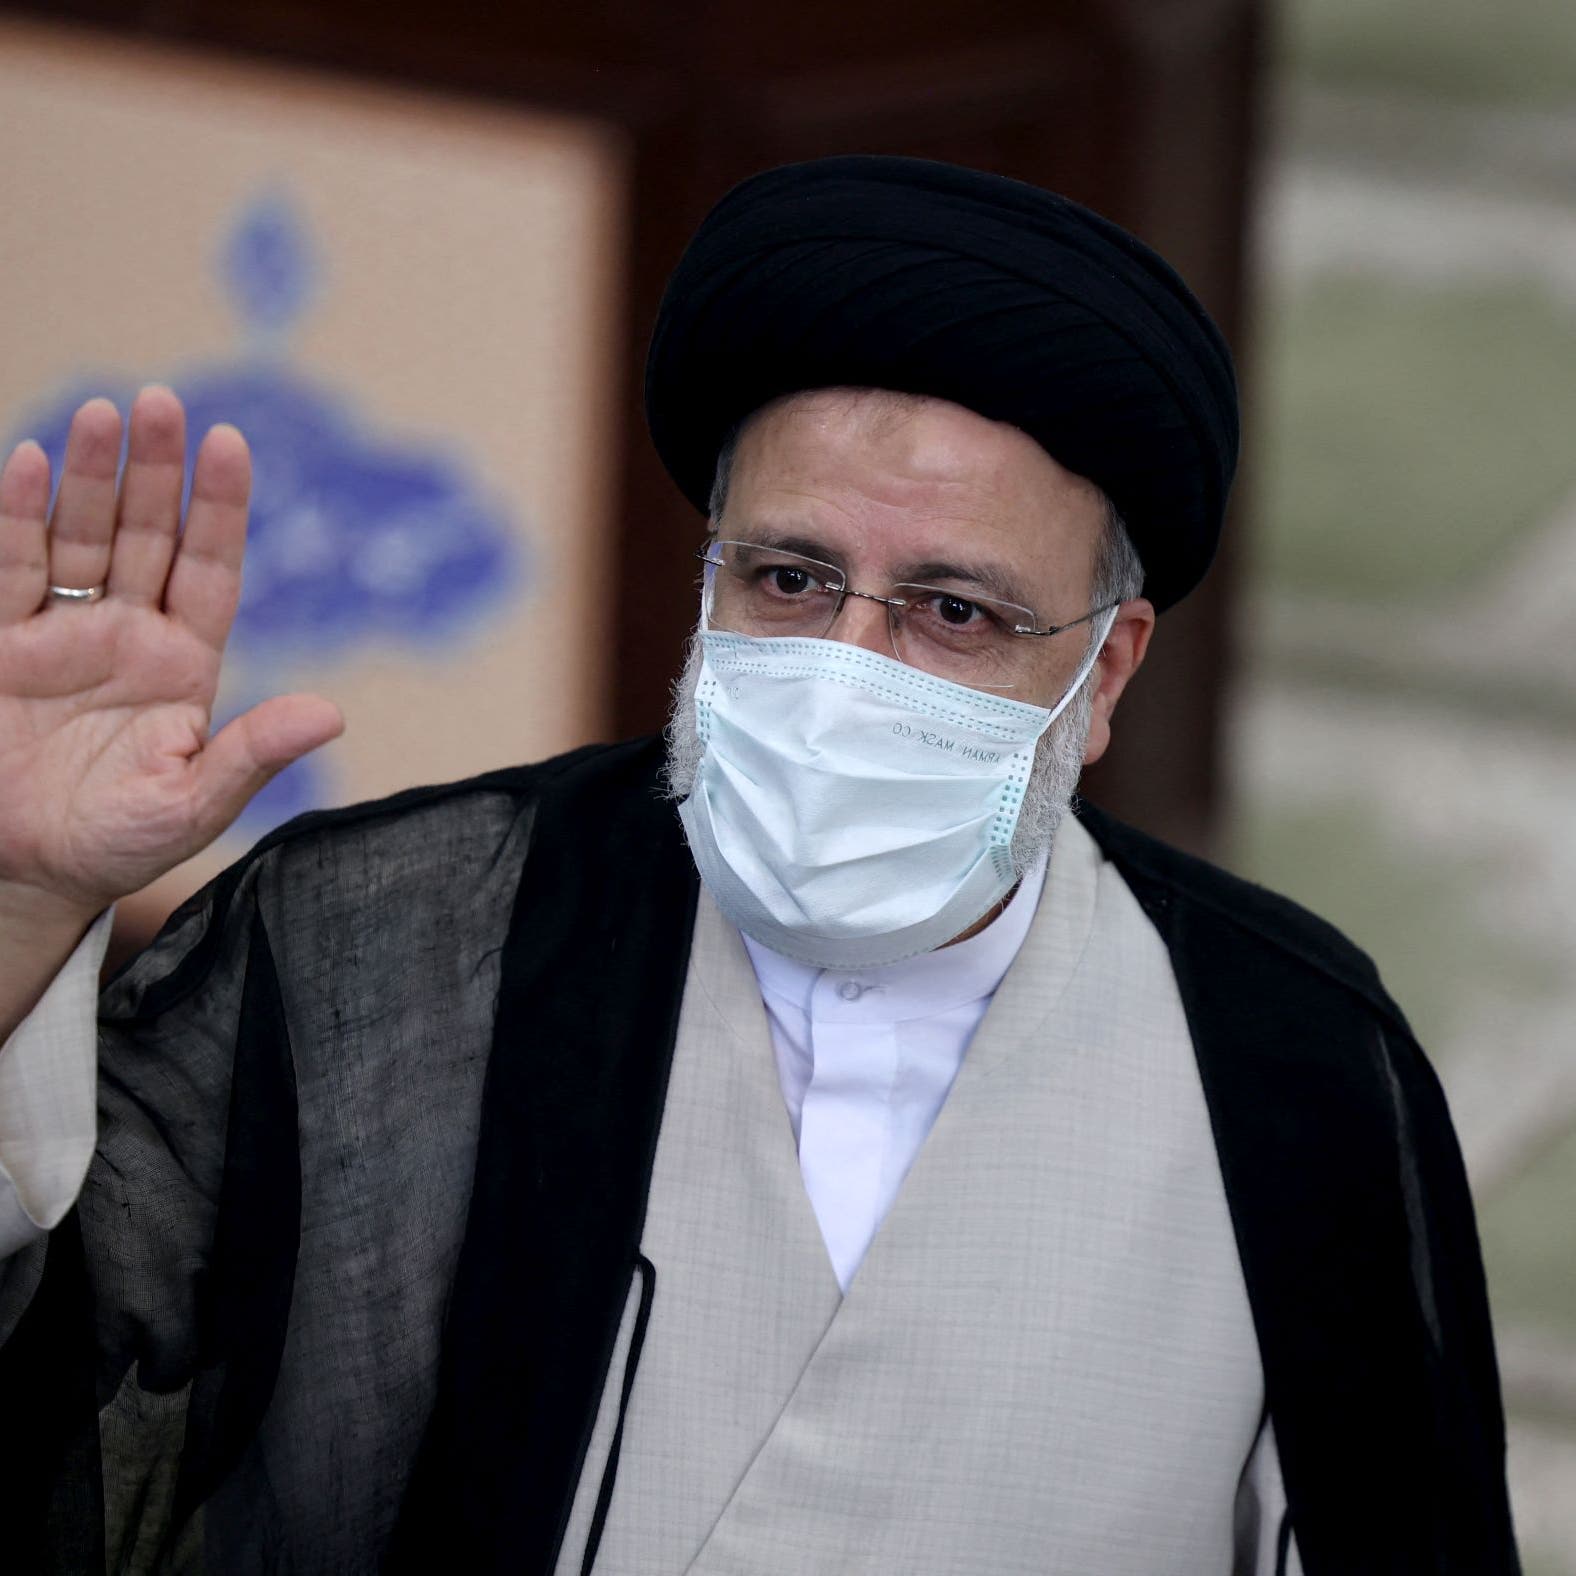 ارتكب جرائم ضد الإنسانية.. منظمة العفو تدعو للتحقيق مع الرئيس الإيراني الجديد